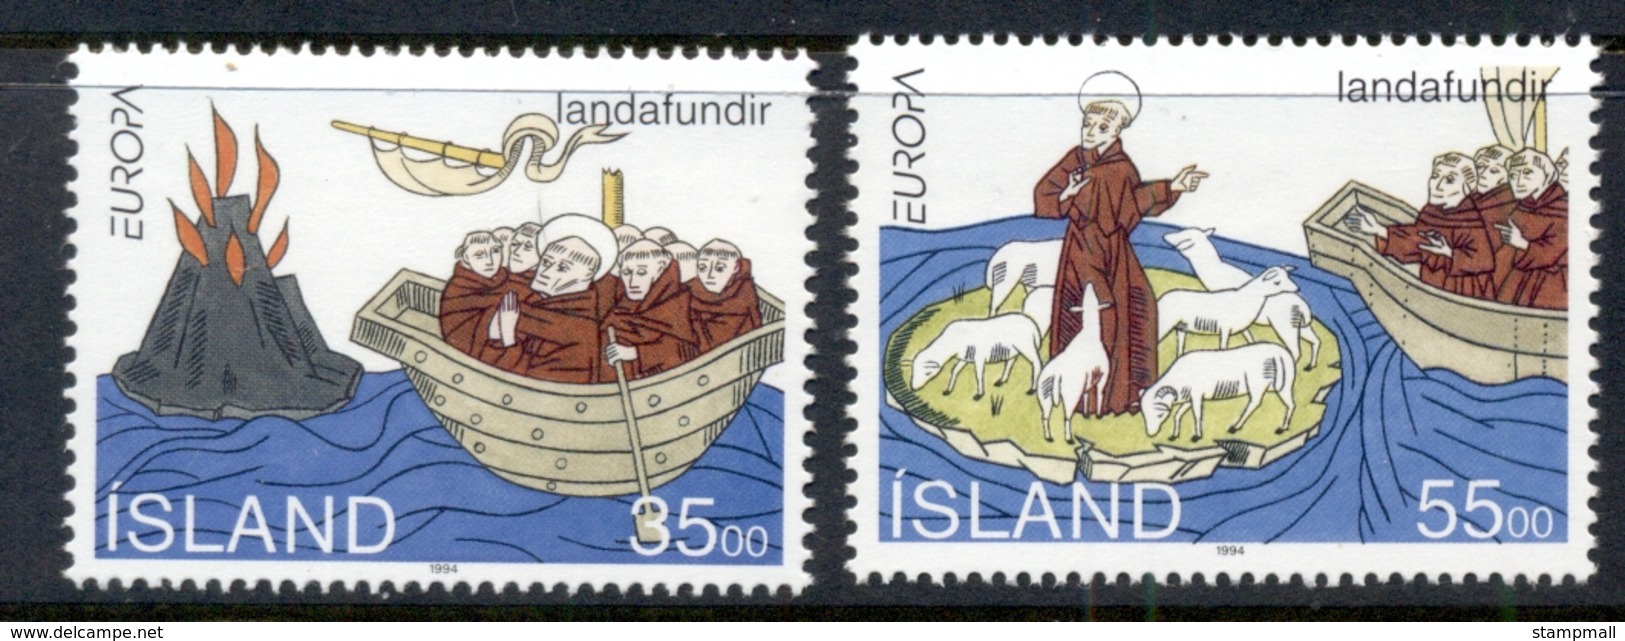 Iceland 1994 Europa, Voyage Of St Brendan MUH - Unused Stamps